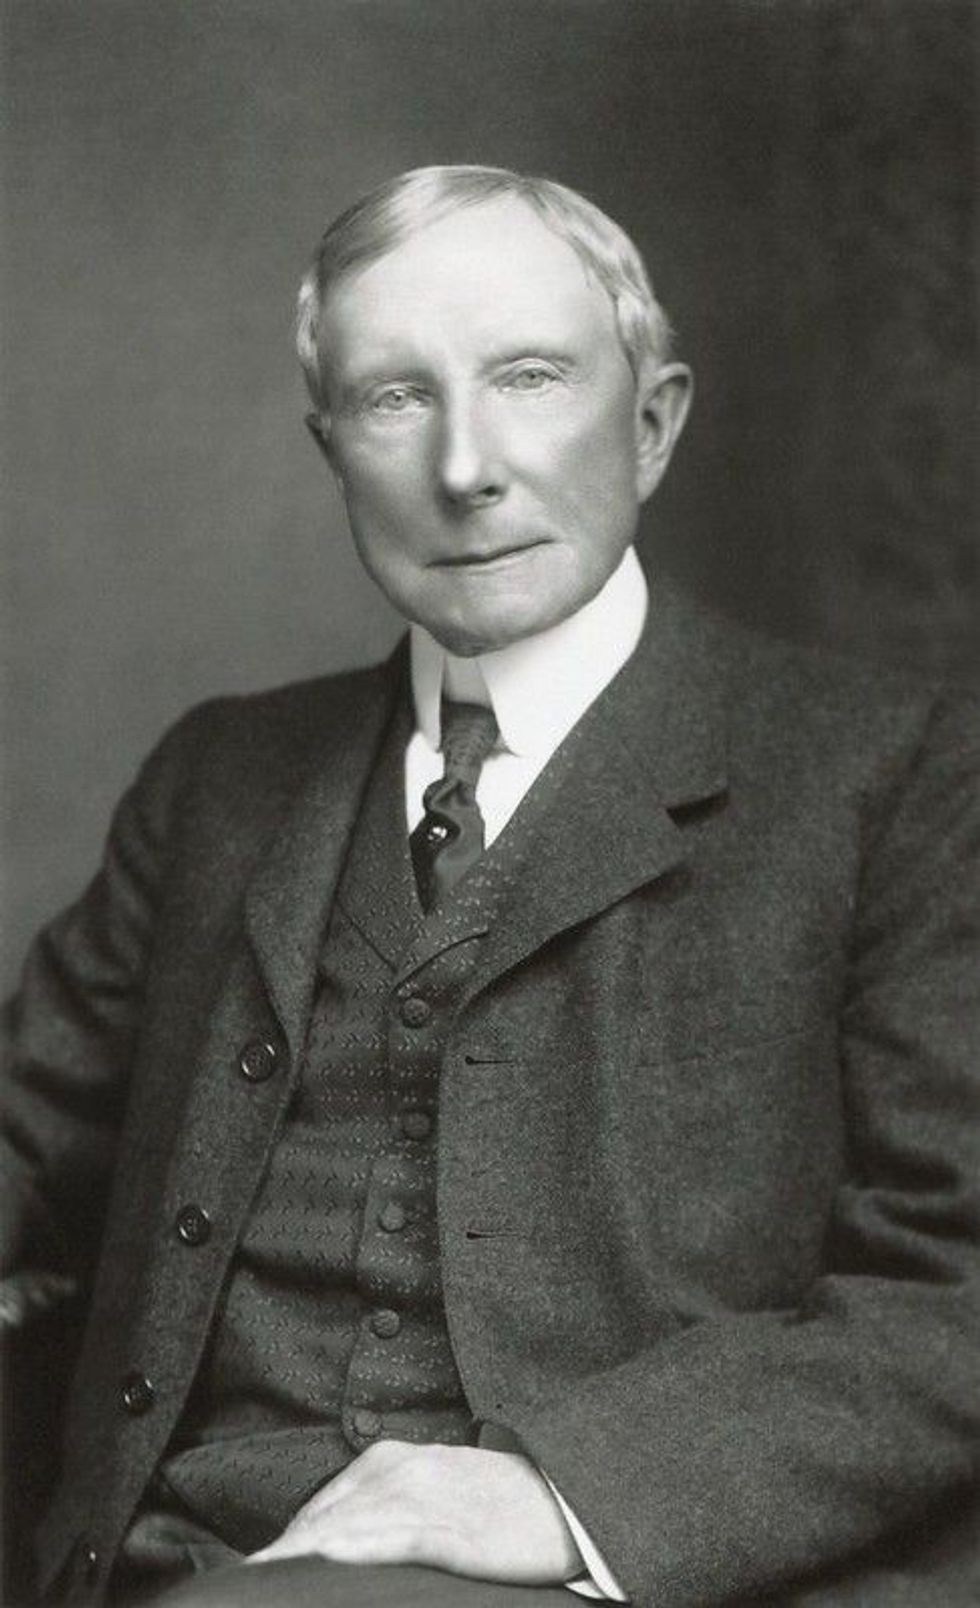 John D. Rockefeller black and white image